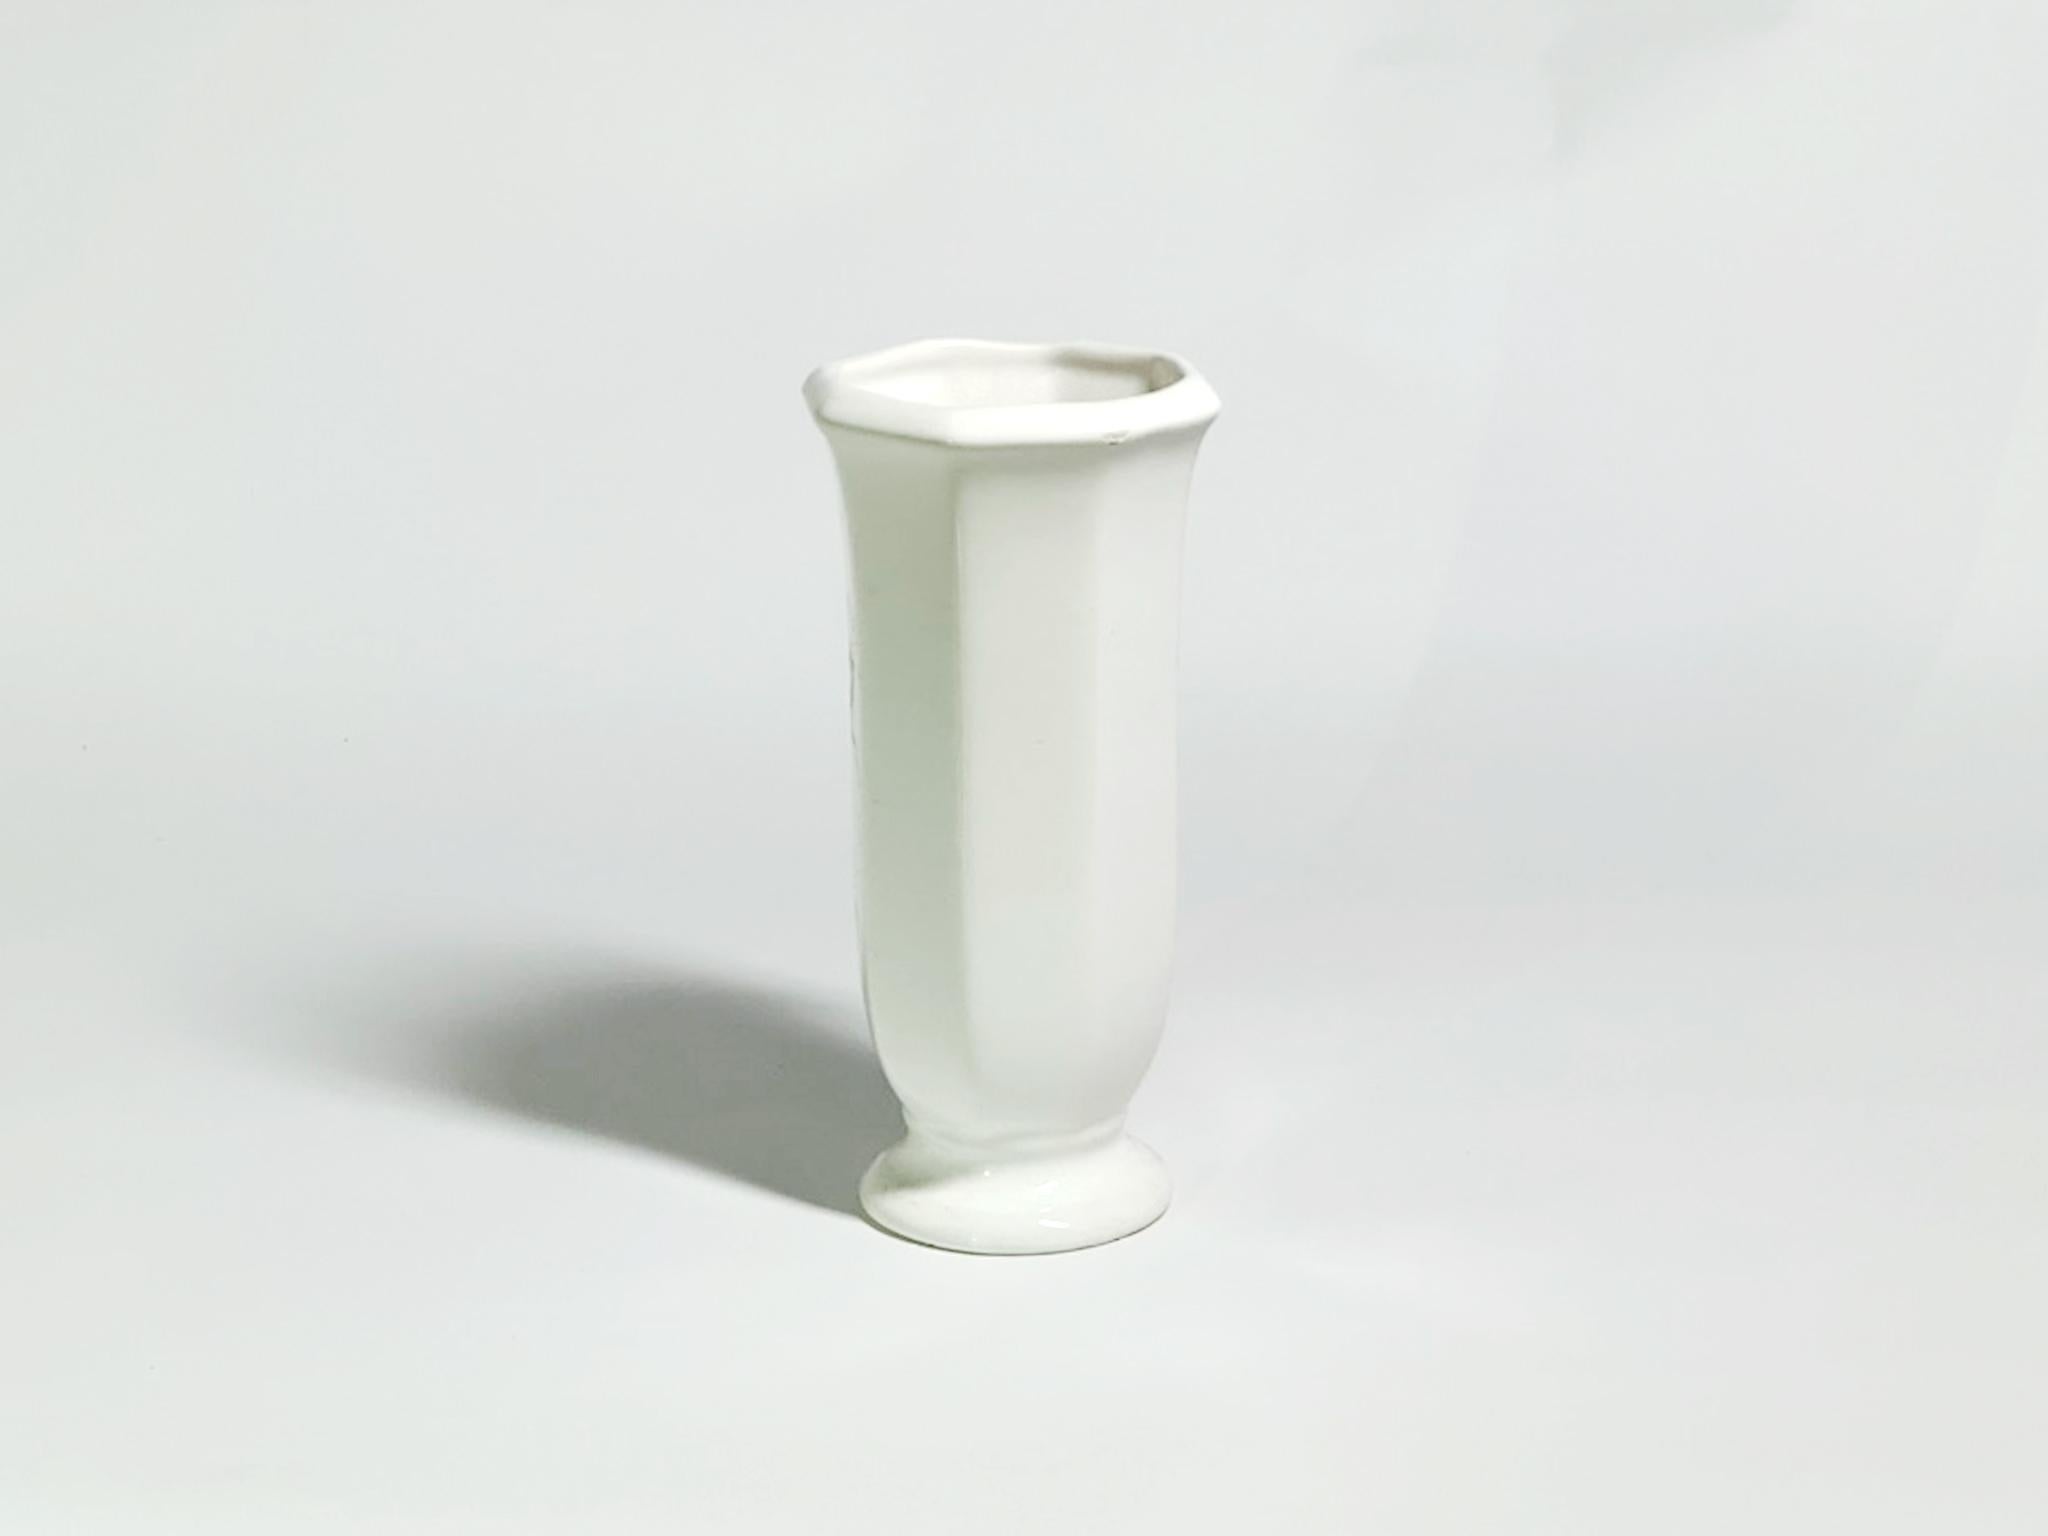 Störung Nr. 03, 2023 von Yongwon Noh
Aus der Serie Glitch
Keramik
Größe: 6,2 Zoll. H x 2.7 in. W x 2.7 in. D
Gewicht: 1kg Unverpackt
Einzigartiges Stück
Signatur auf dem Boden der Vase

Die Glitch-Serie ist eine zeitgenössische Neuinterpretation der